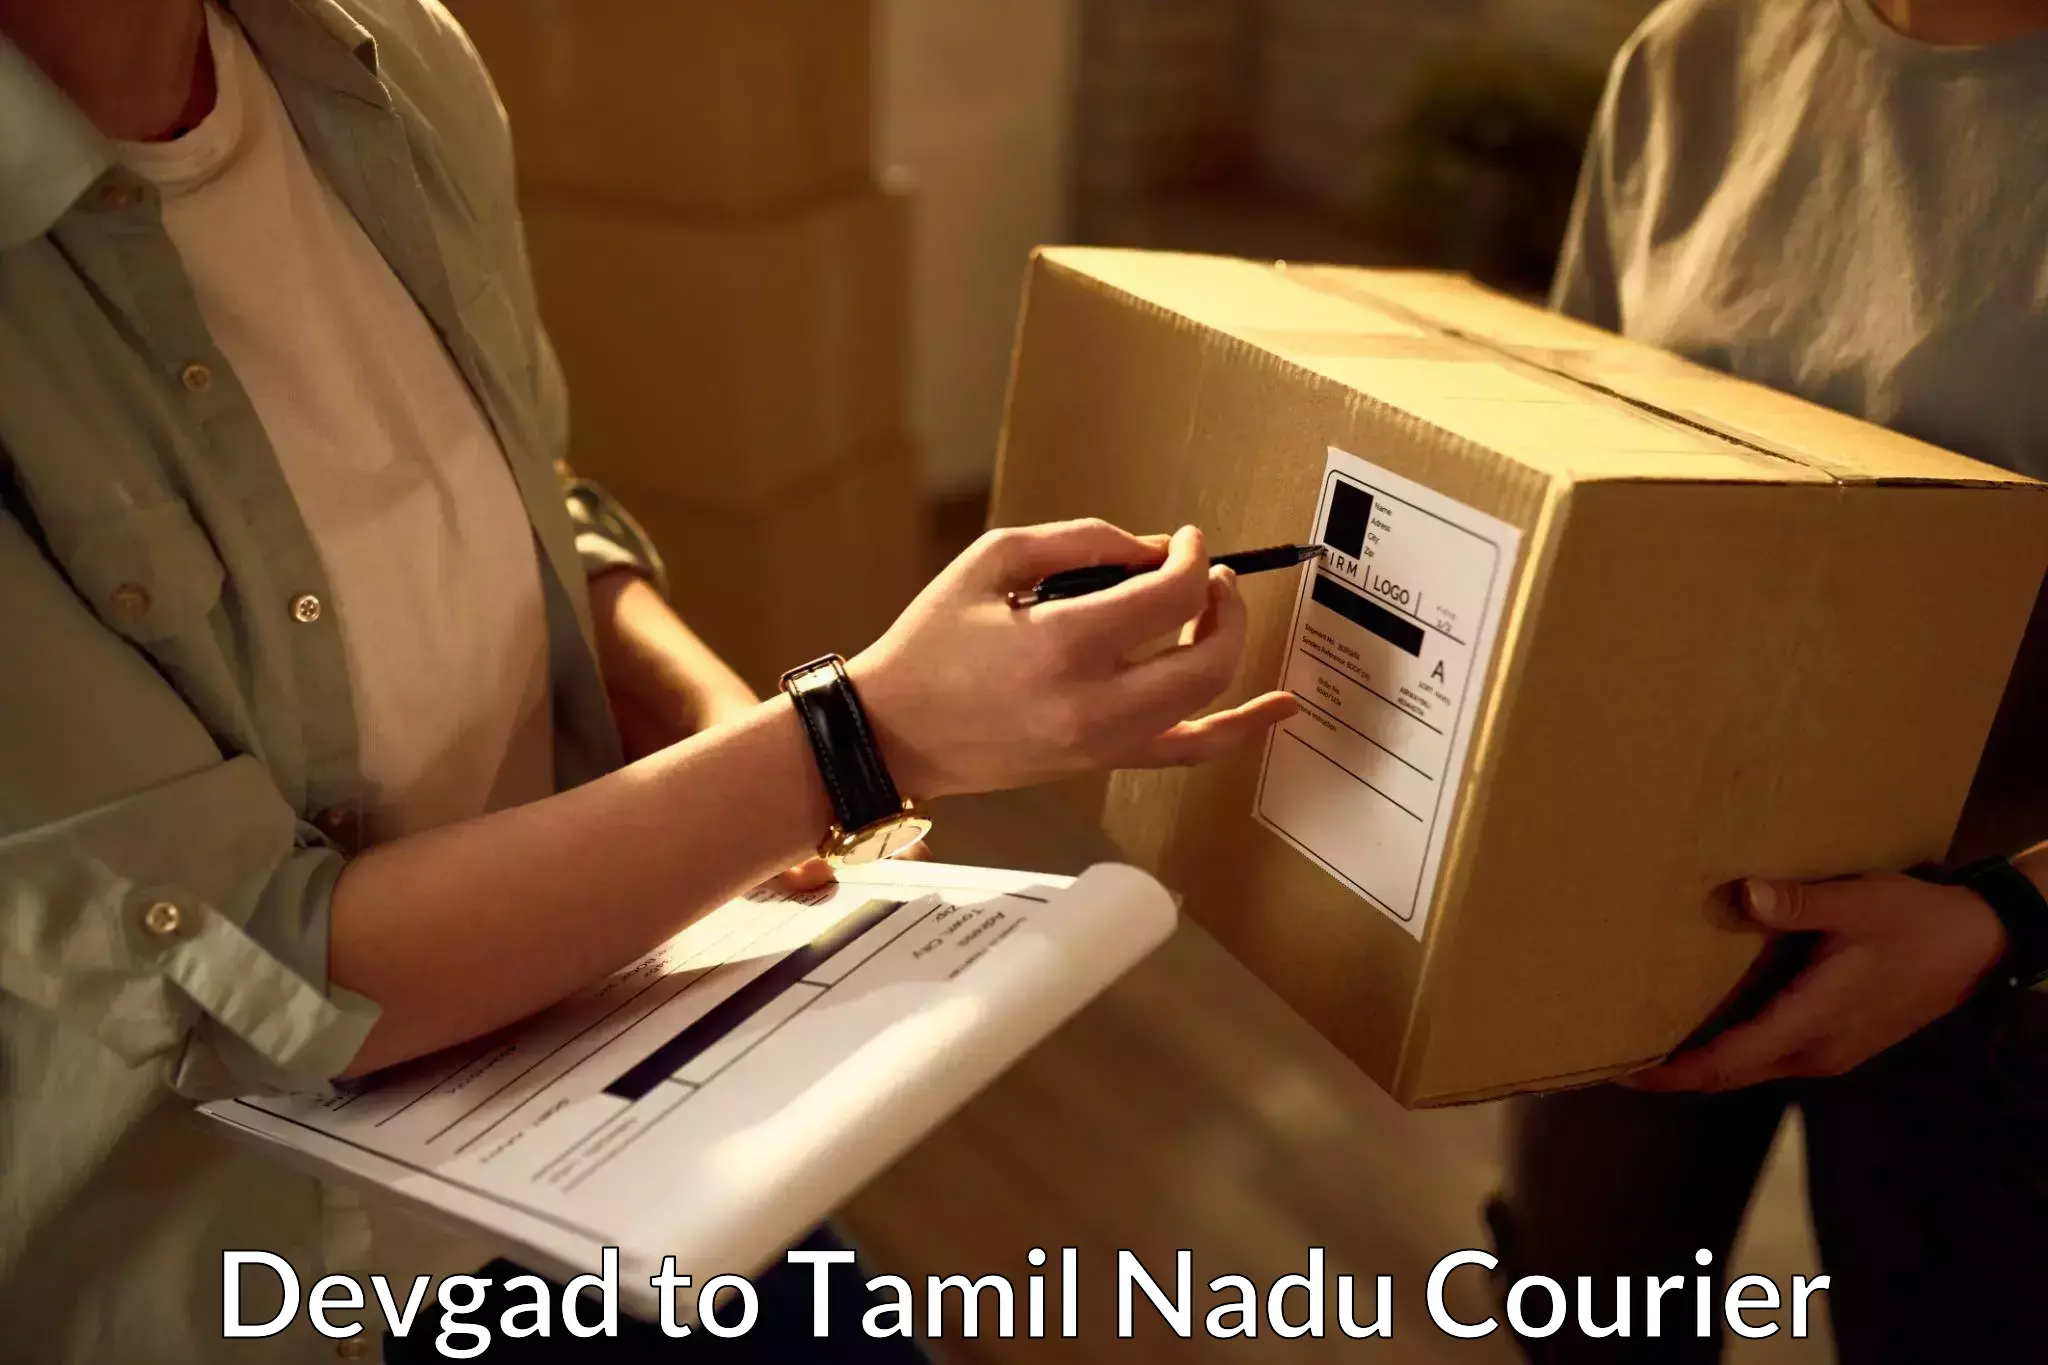 Overnight delivery Devgad to Madurai